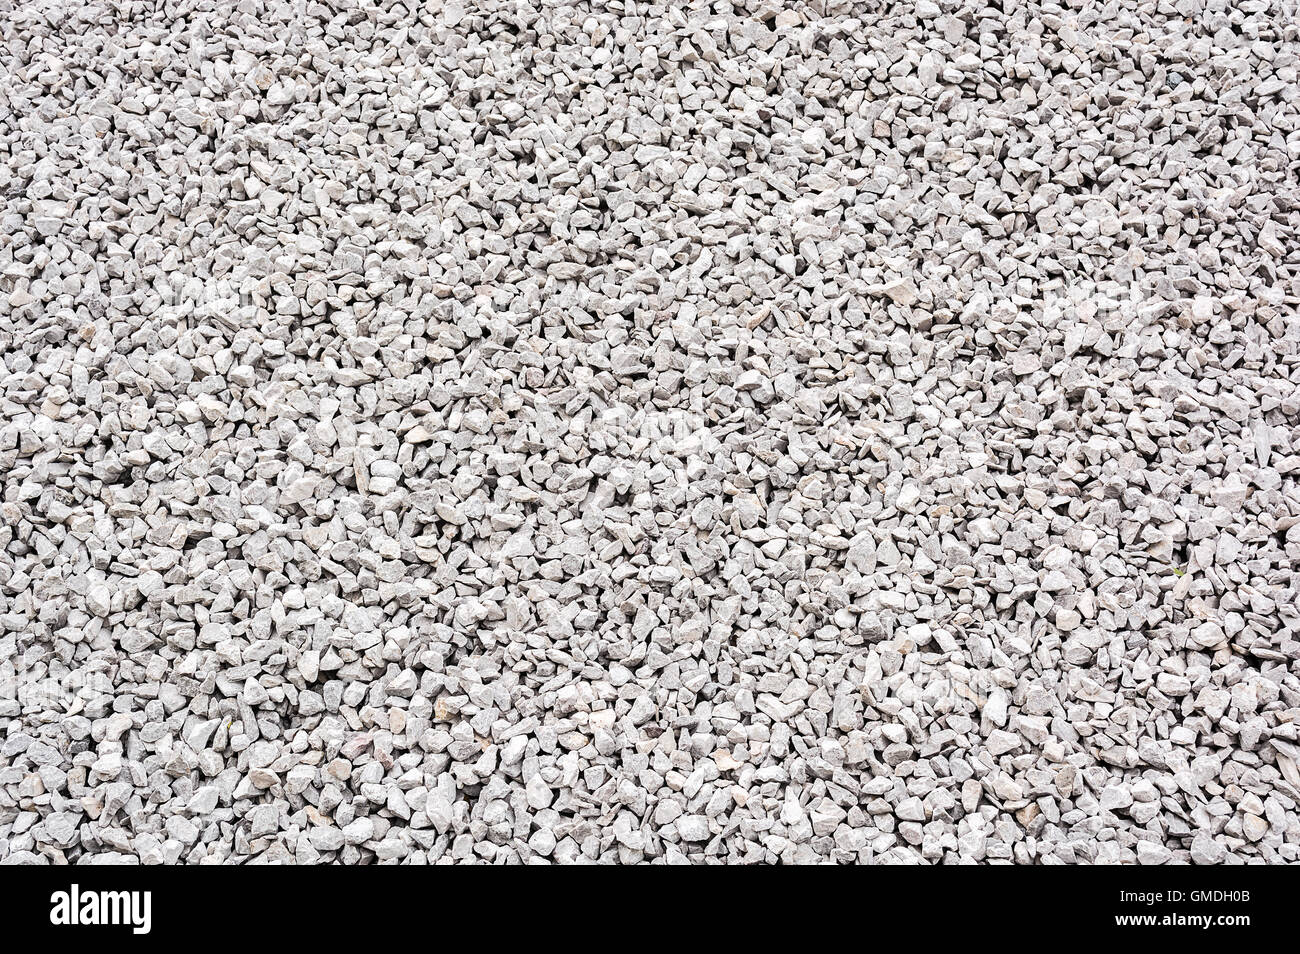 Gravier de granit de texture. Les matériaux de construction. Image ID : 300151568 Banque D'Images